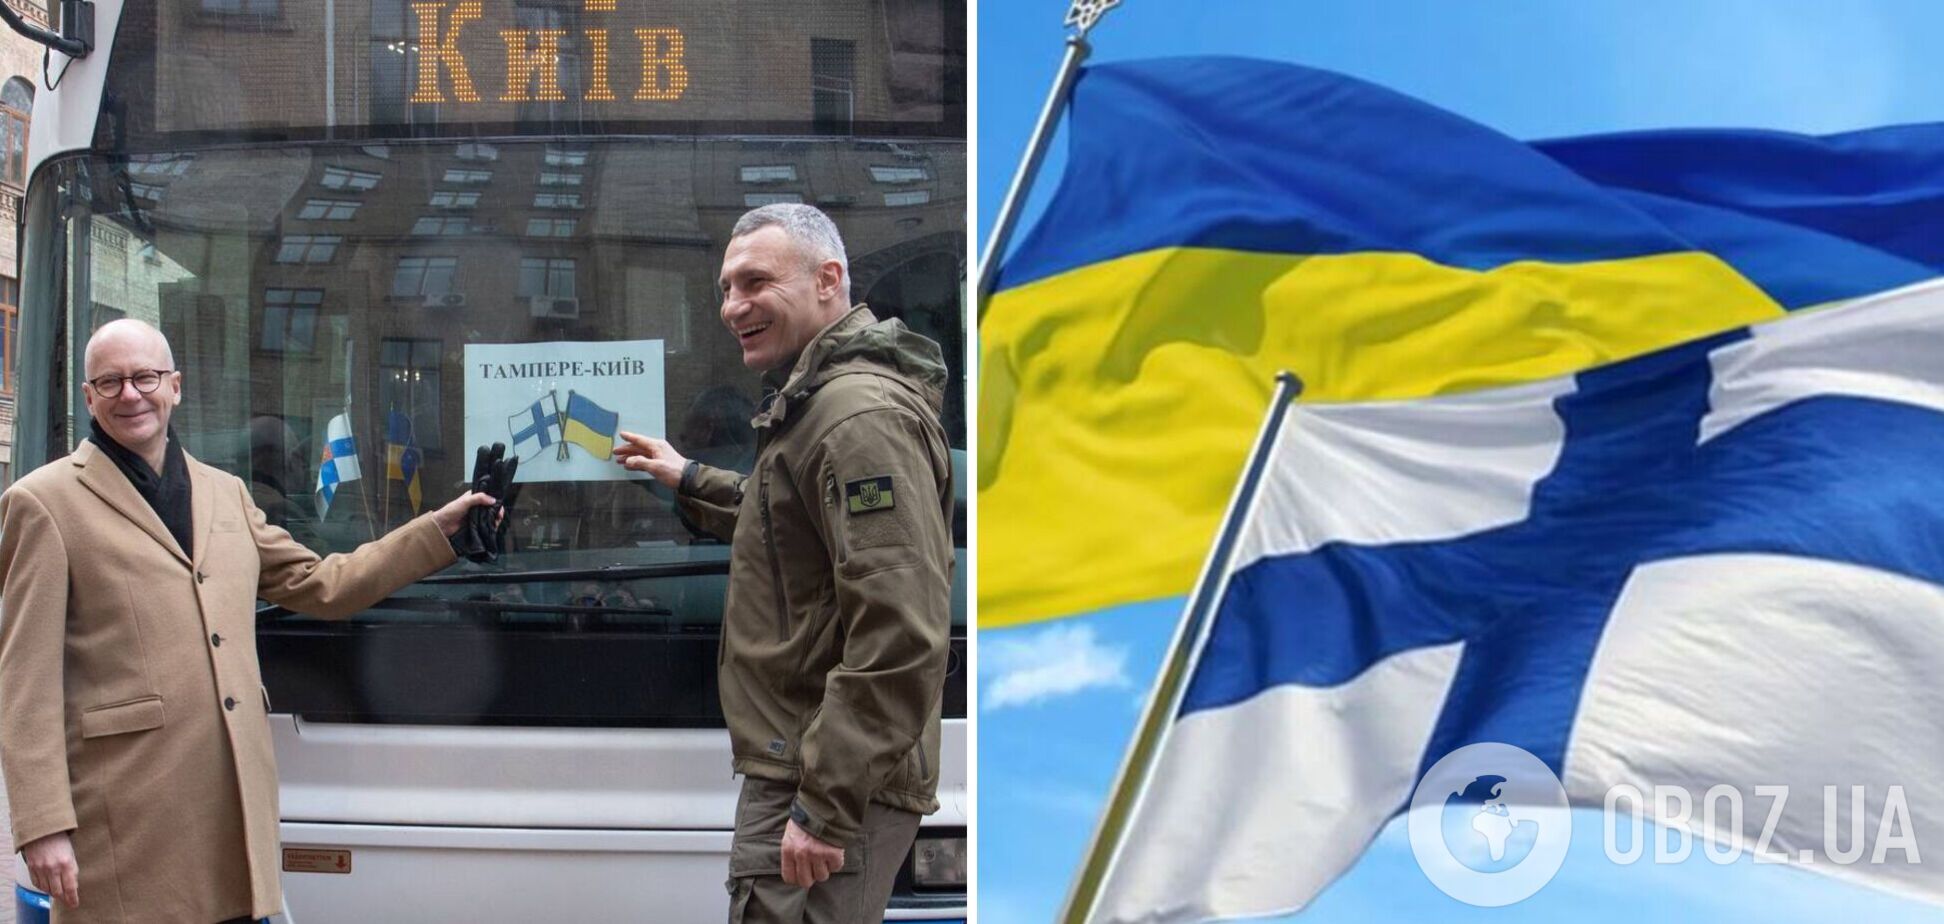 Киев получил пассажирские автобусы и гуманитарную помощь от финского города Тампере